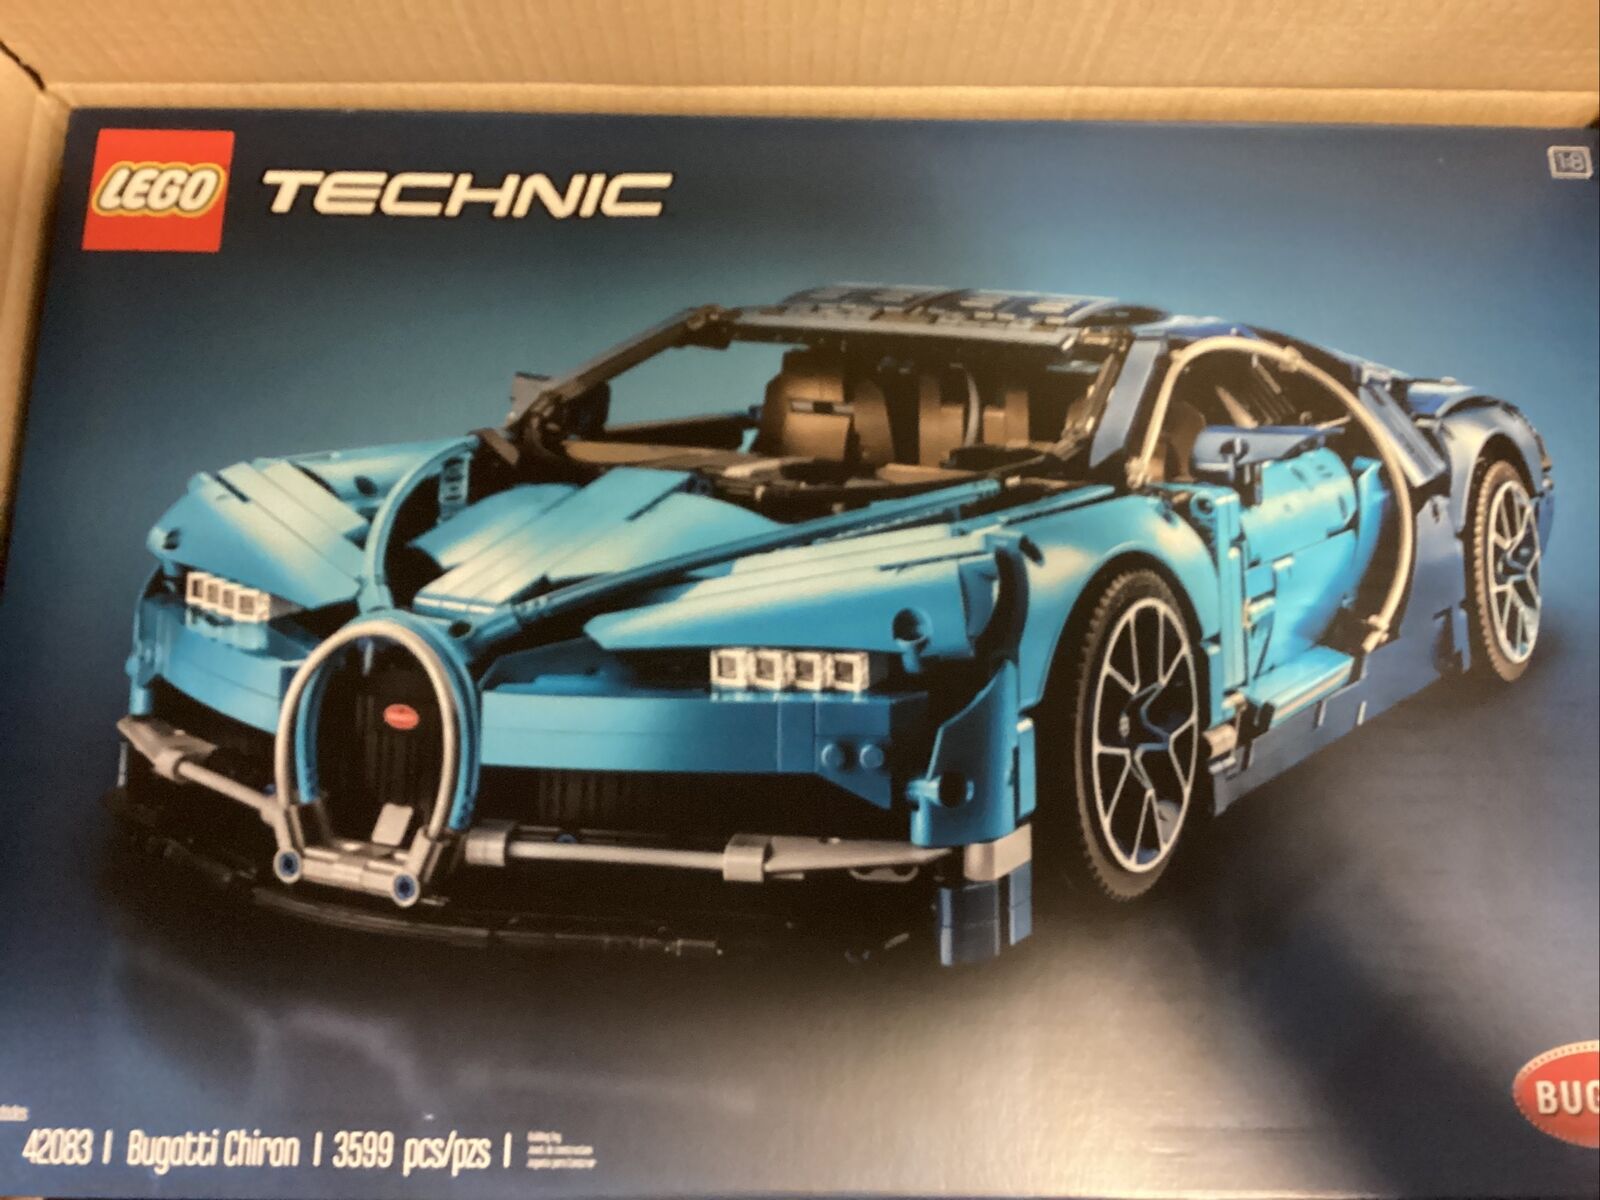 BRAND NEW LEGO TECHNIC: Bugatti Chiron (42083) RETIRED